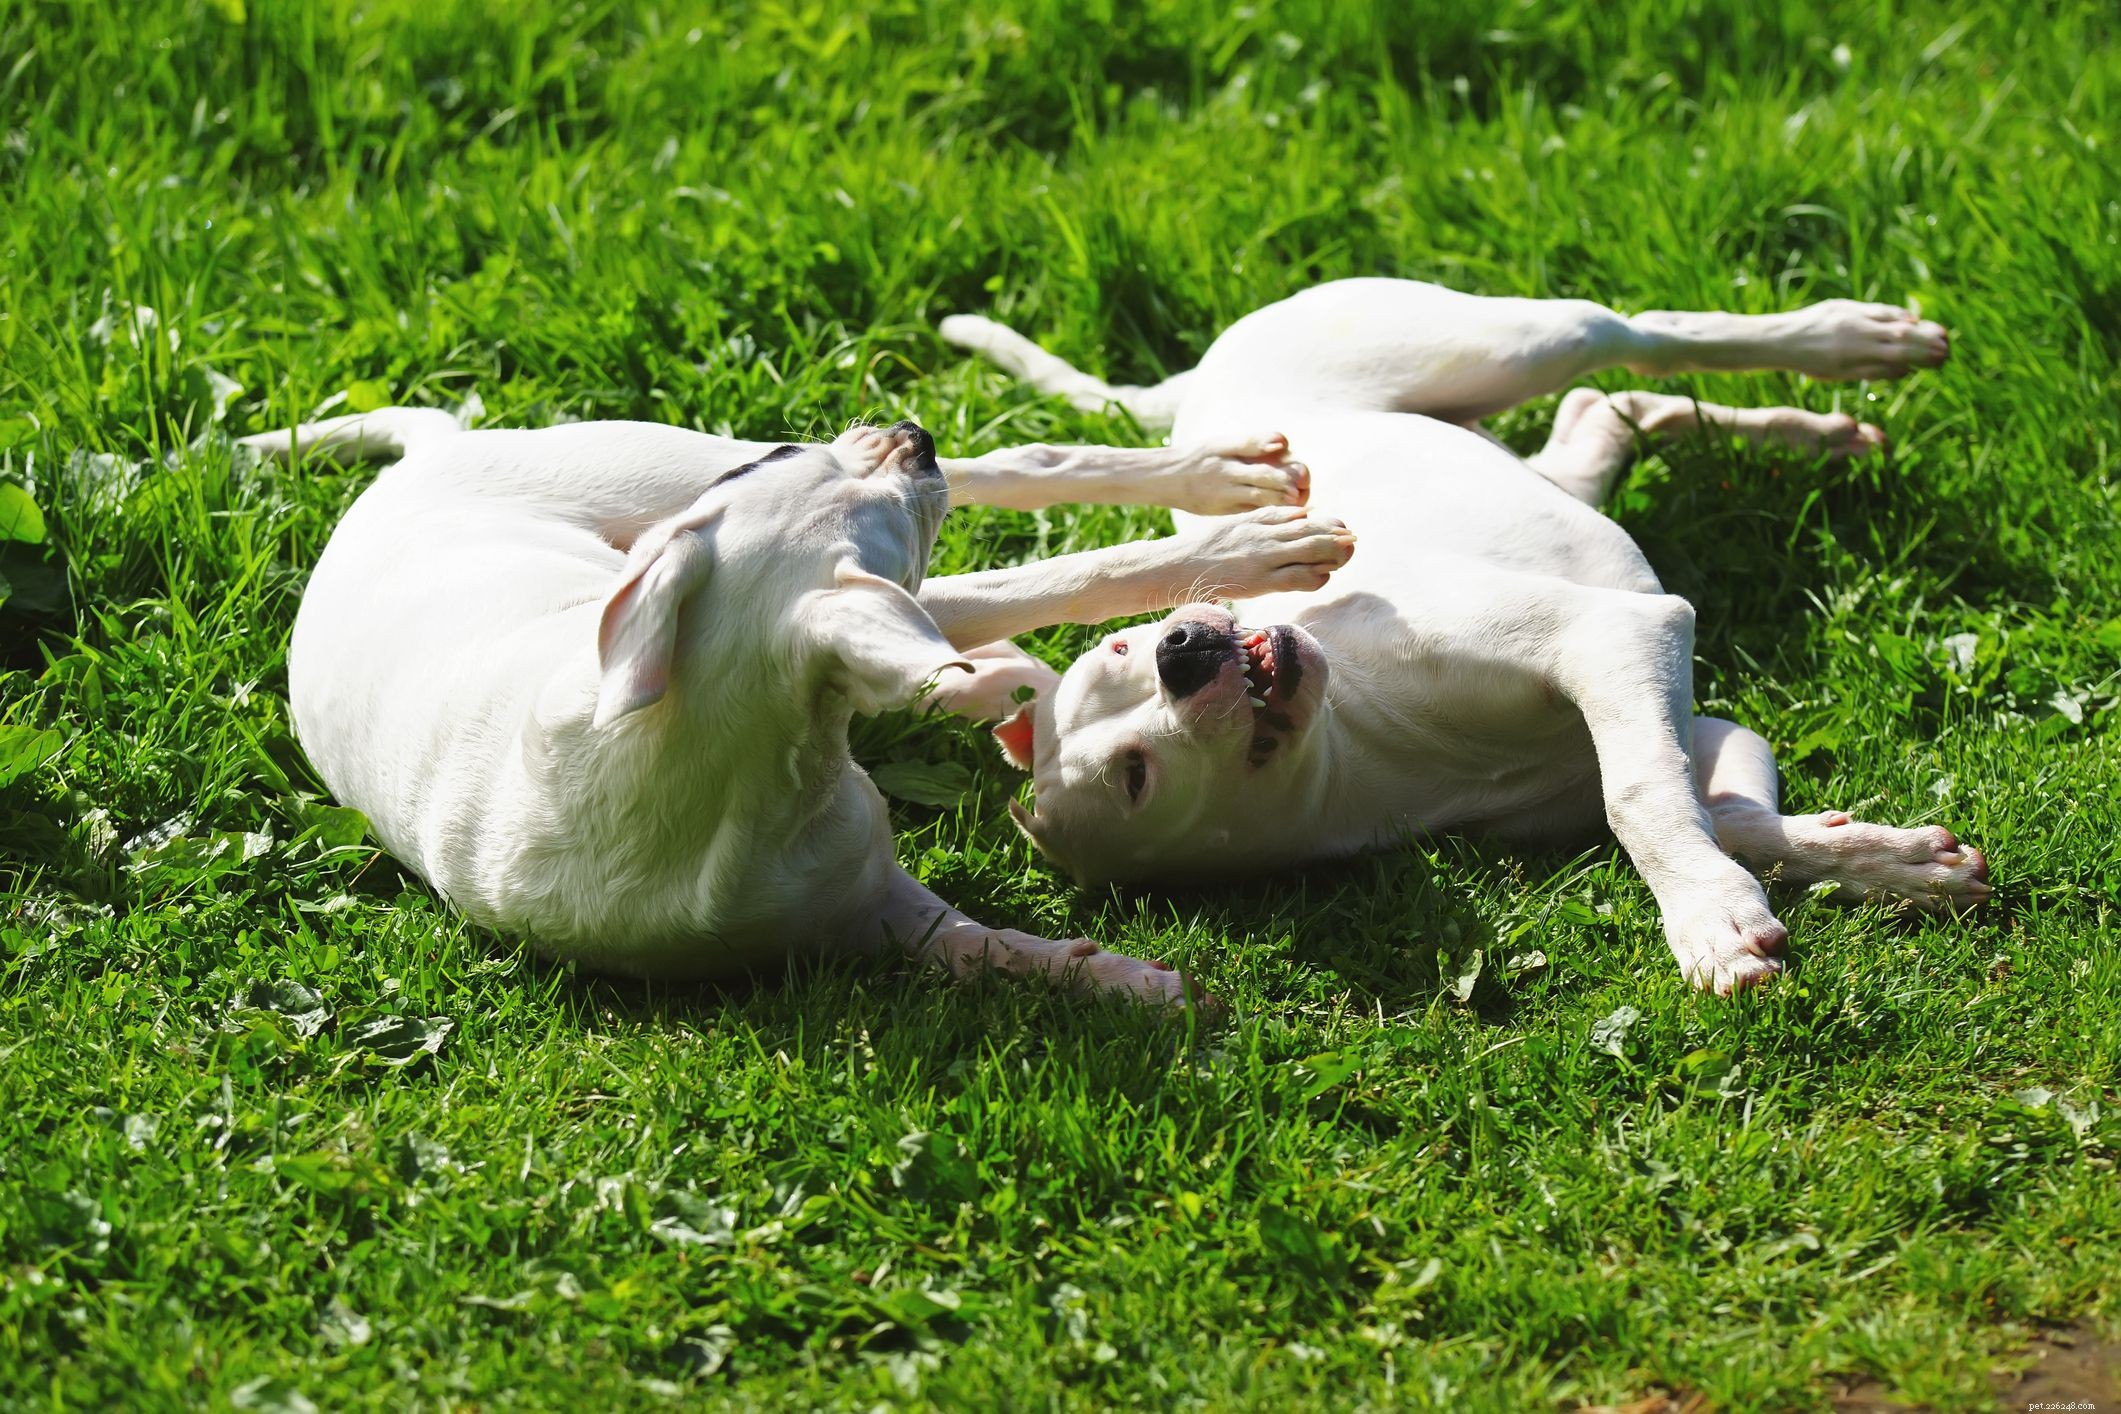 Dogo Argentino:kenmerken en verzorging van hondenrassen